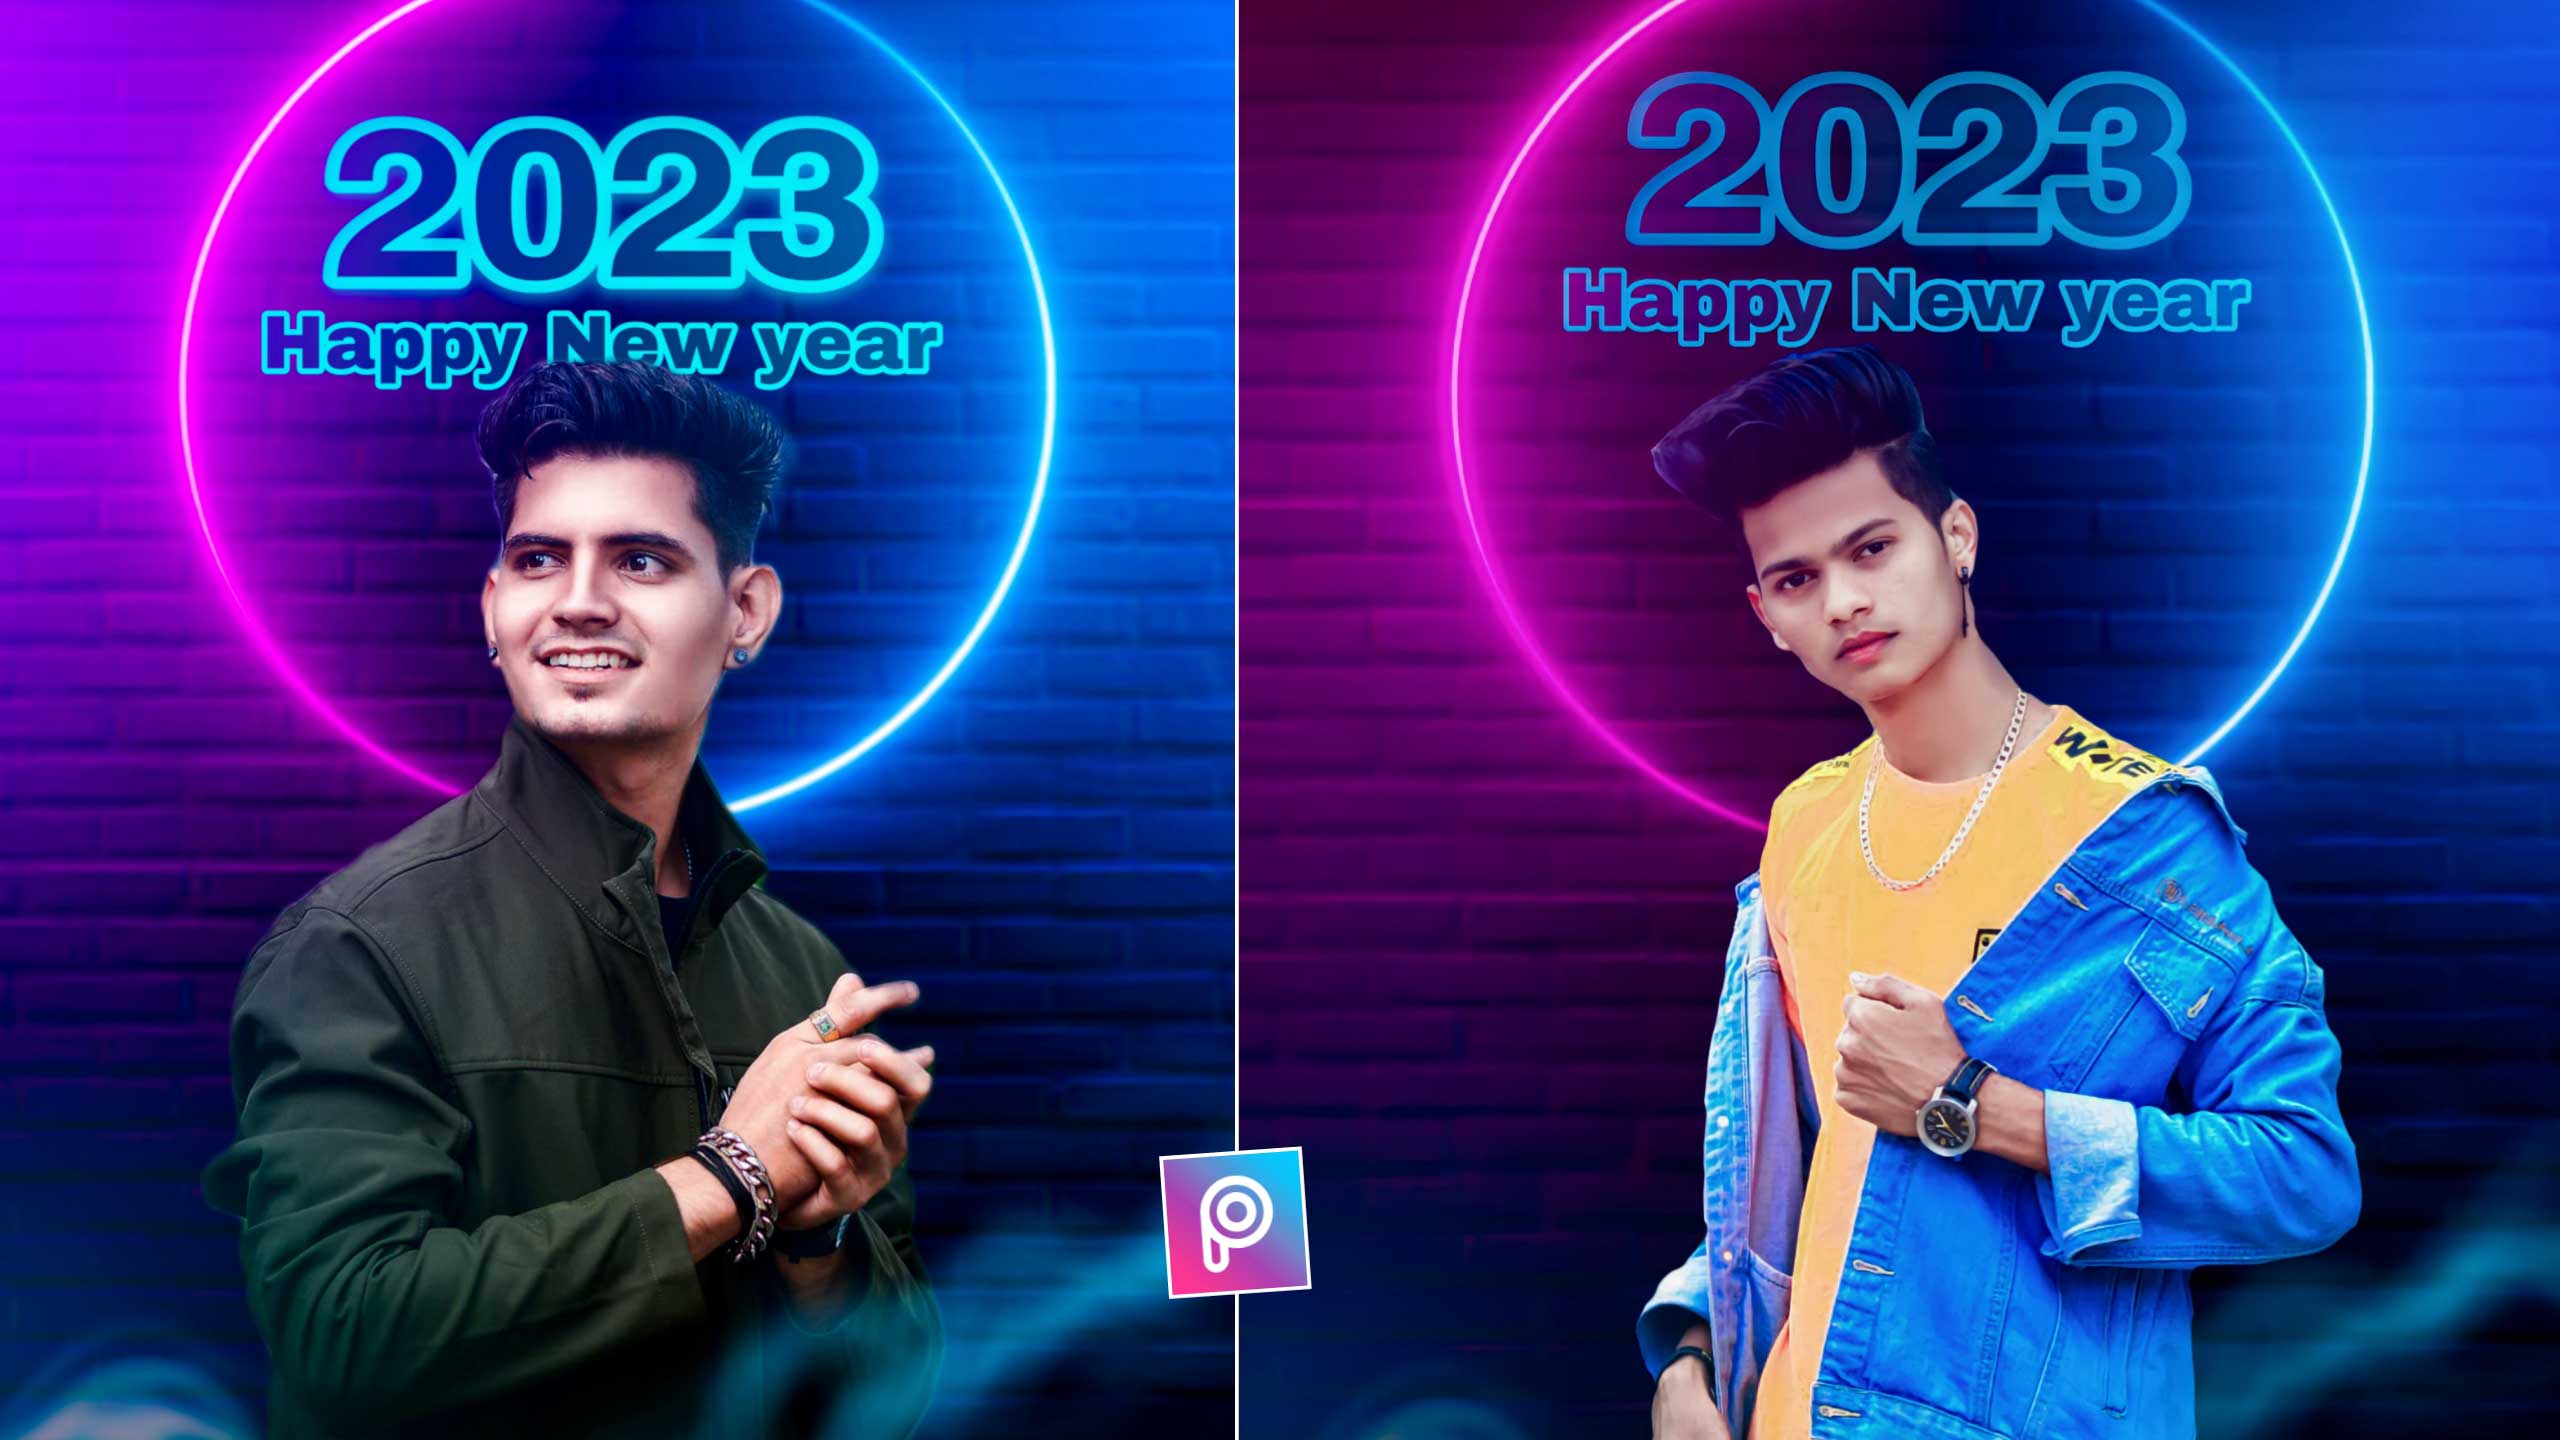 happy new year 2022 picsart editing Archives - Picsart Photo Editing